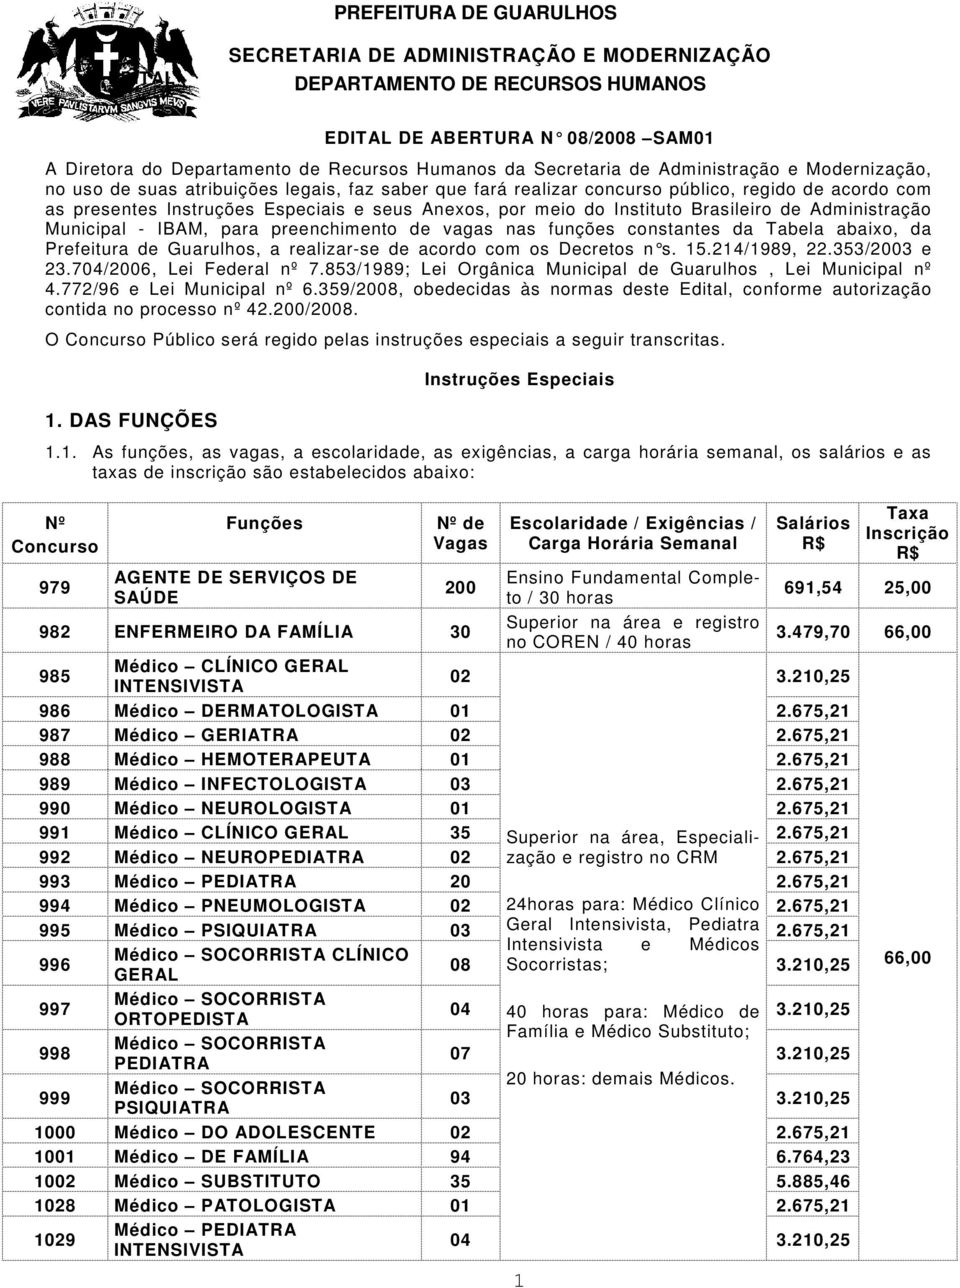 meio do Instituto Brasileiro de Administração Municipal - IBAM, para preenchimento de vagas nas funções constantes da Tabela abaixo, da Prefeitura de Guarulhos, a realizar-se de acordo com os